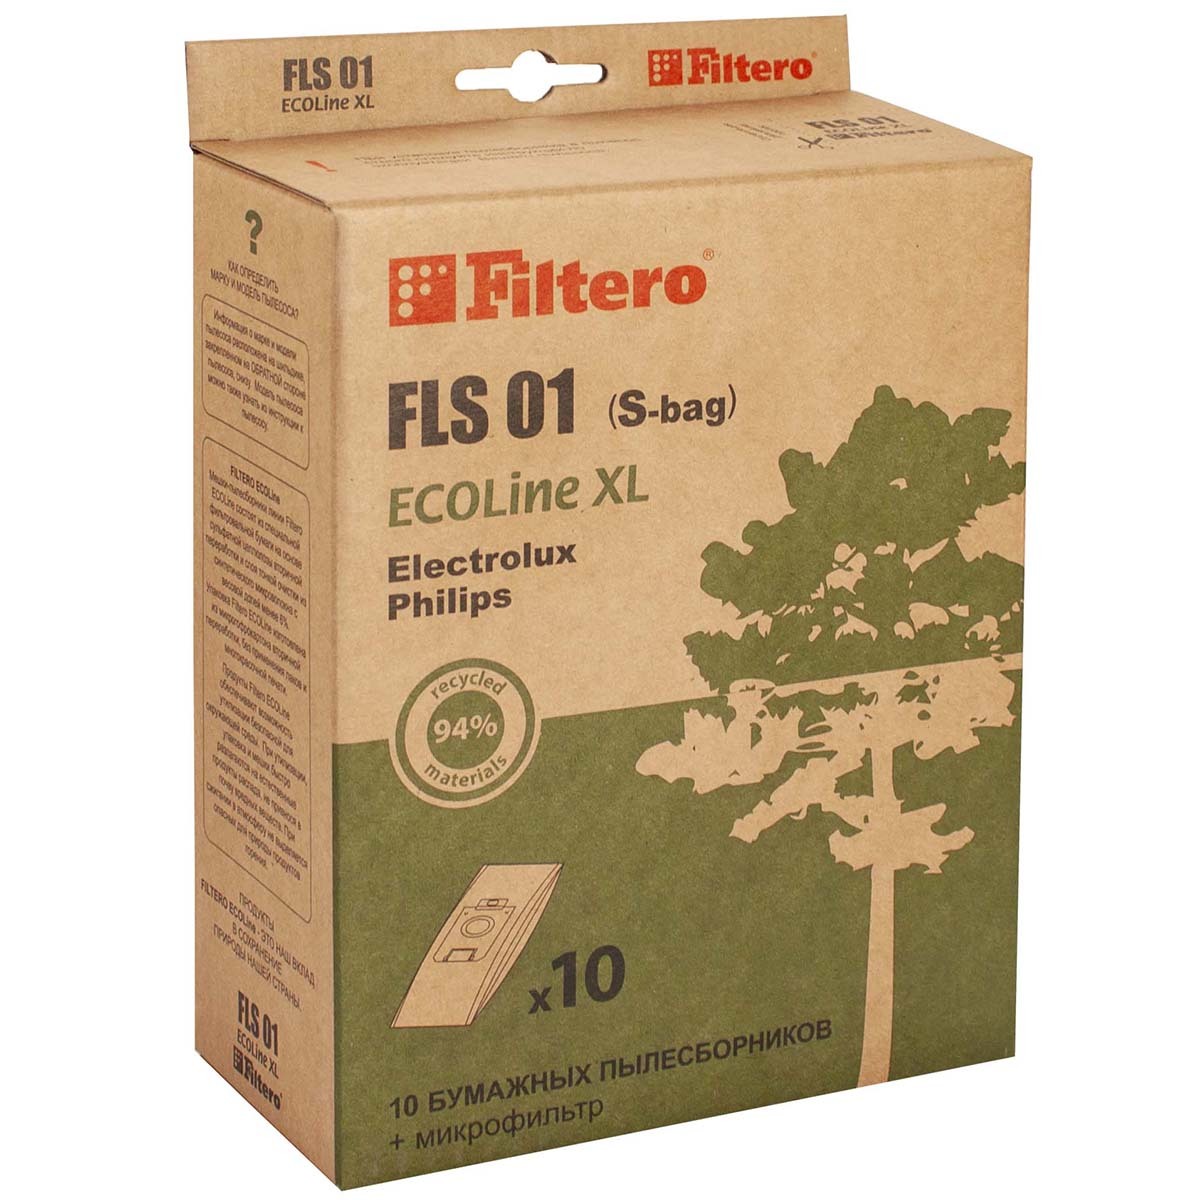 Пылесборники Filtero FLS 01 (S-bag) (10+) XL ECOLine пылесборники filtero fls 01 s bag allergo 4 шт моторный фильтр и микрофильтр